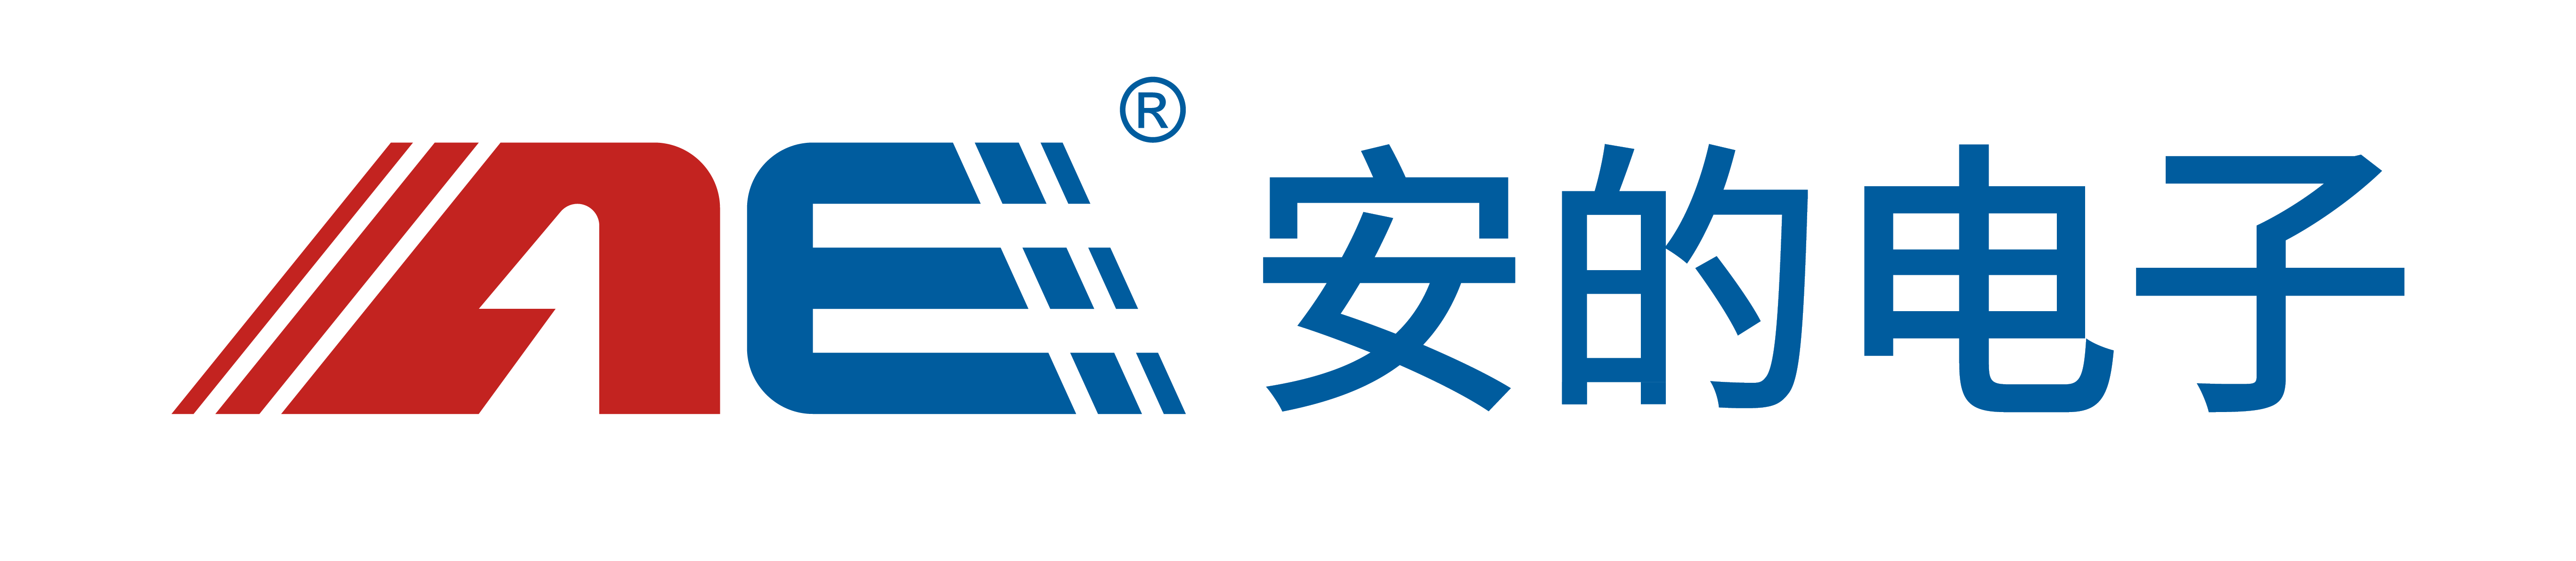 中国物联网产业感知层领域品牌企业，RFID读写技术领先的核心设备供应商